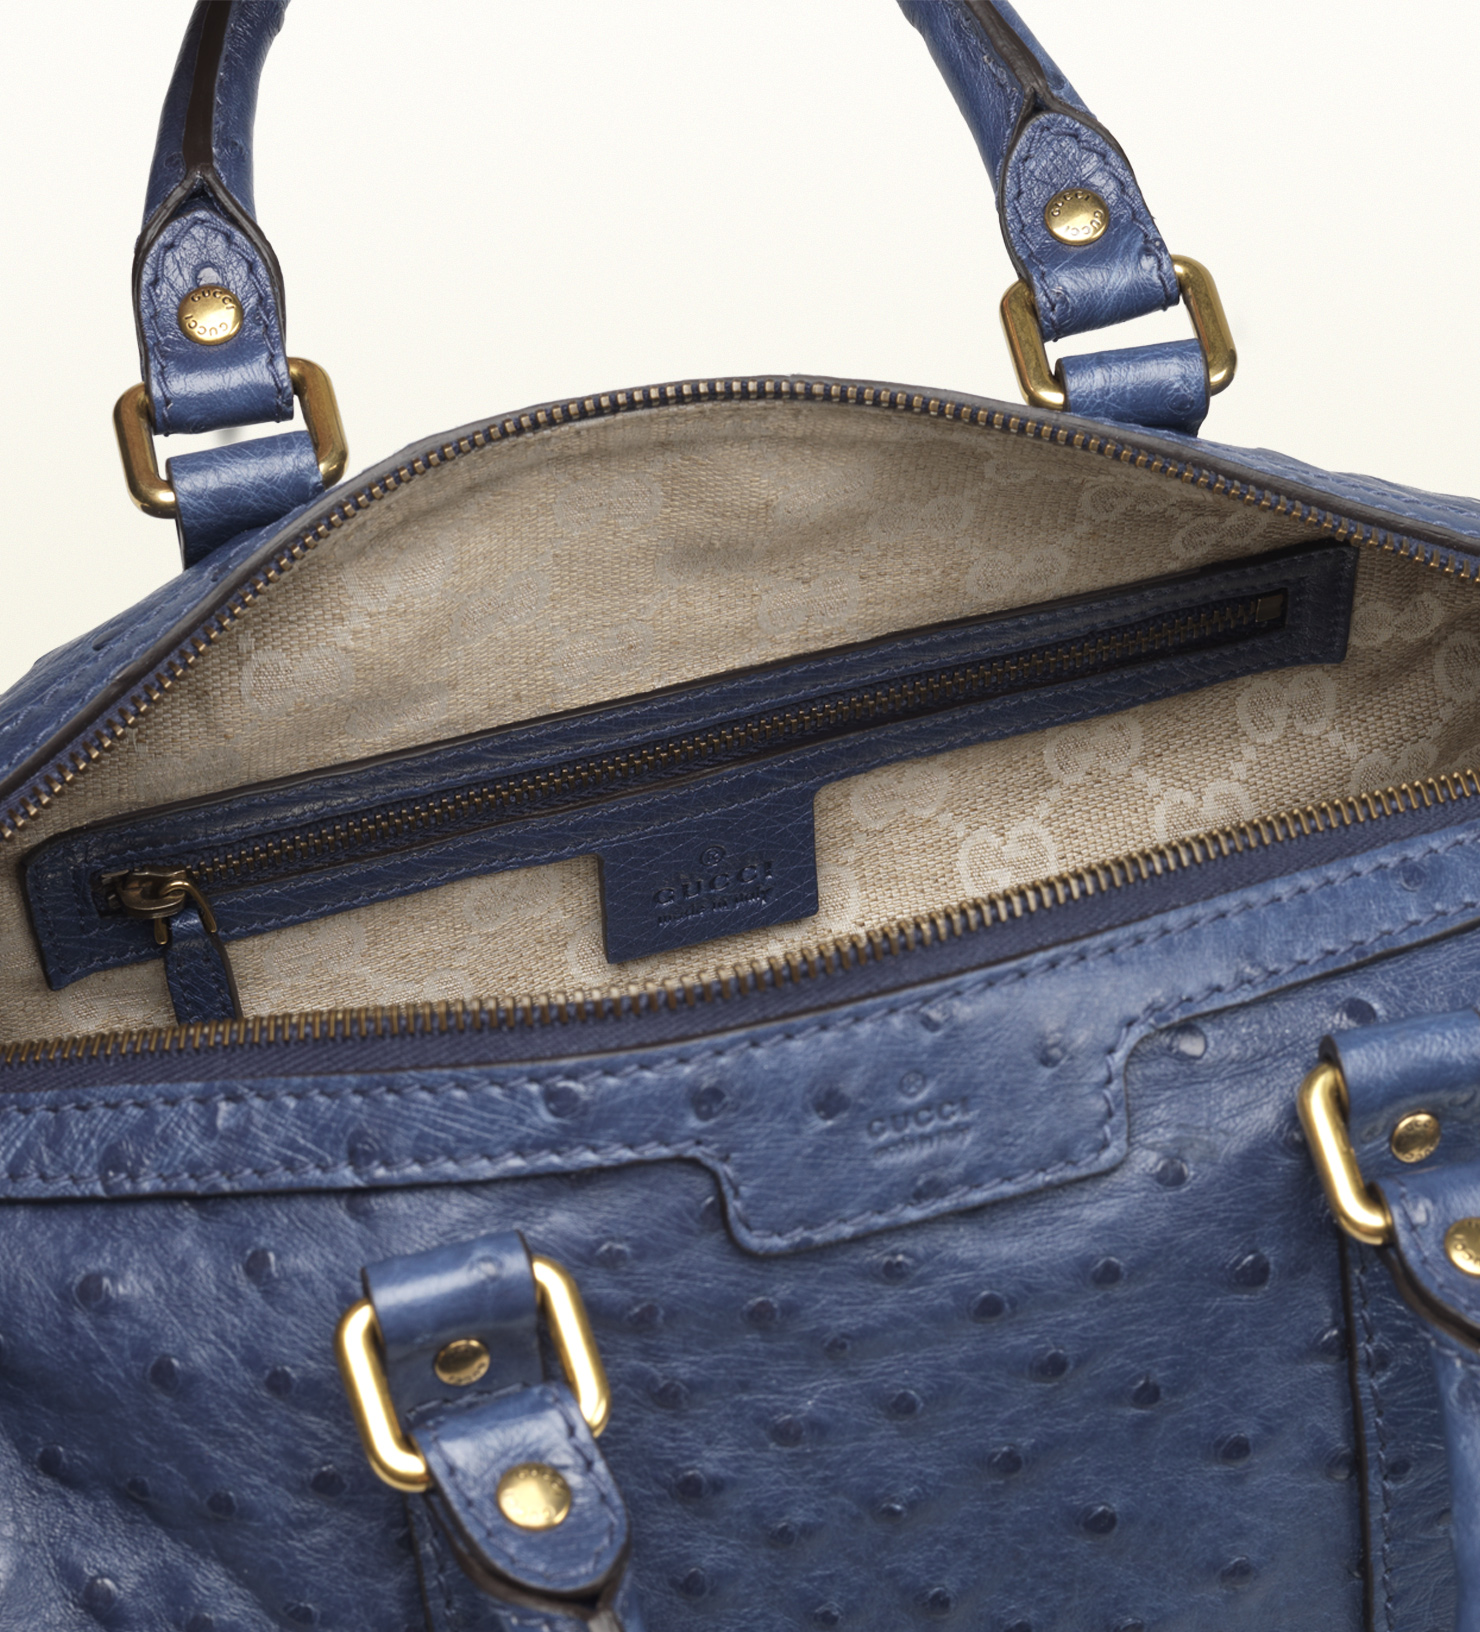 Lyst - Gucci Vintage Web Ostrich Boston Bag in Blue